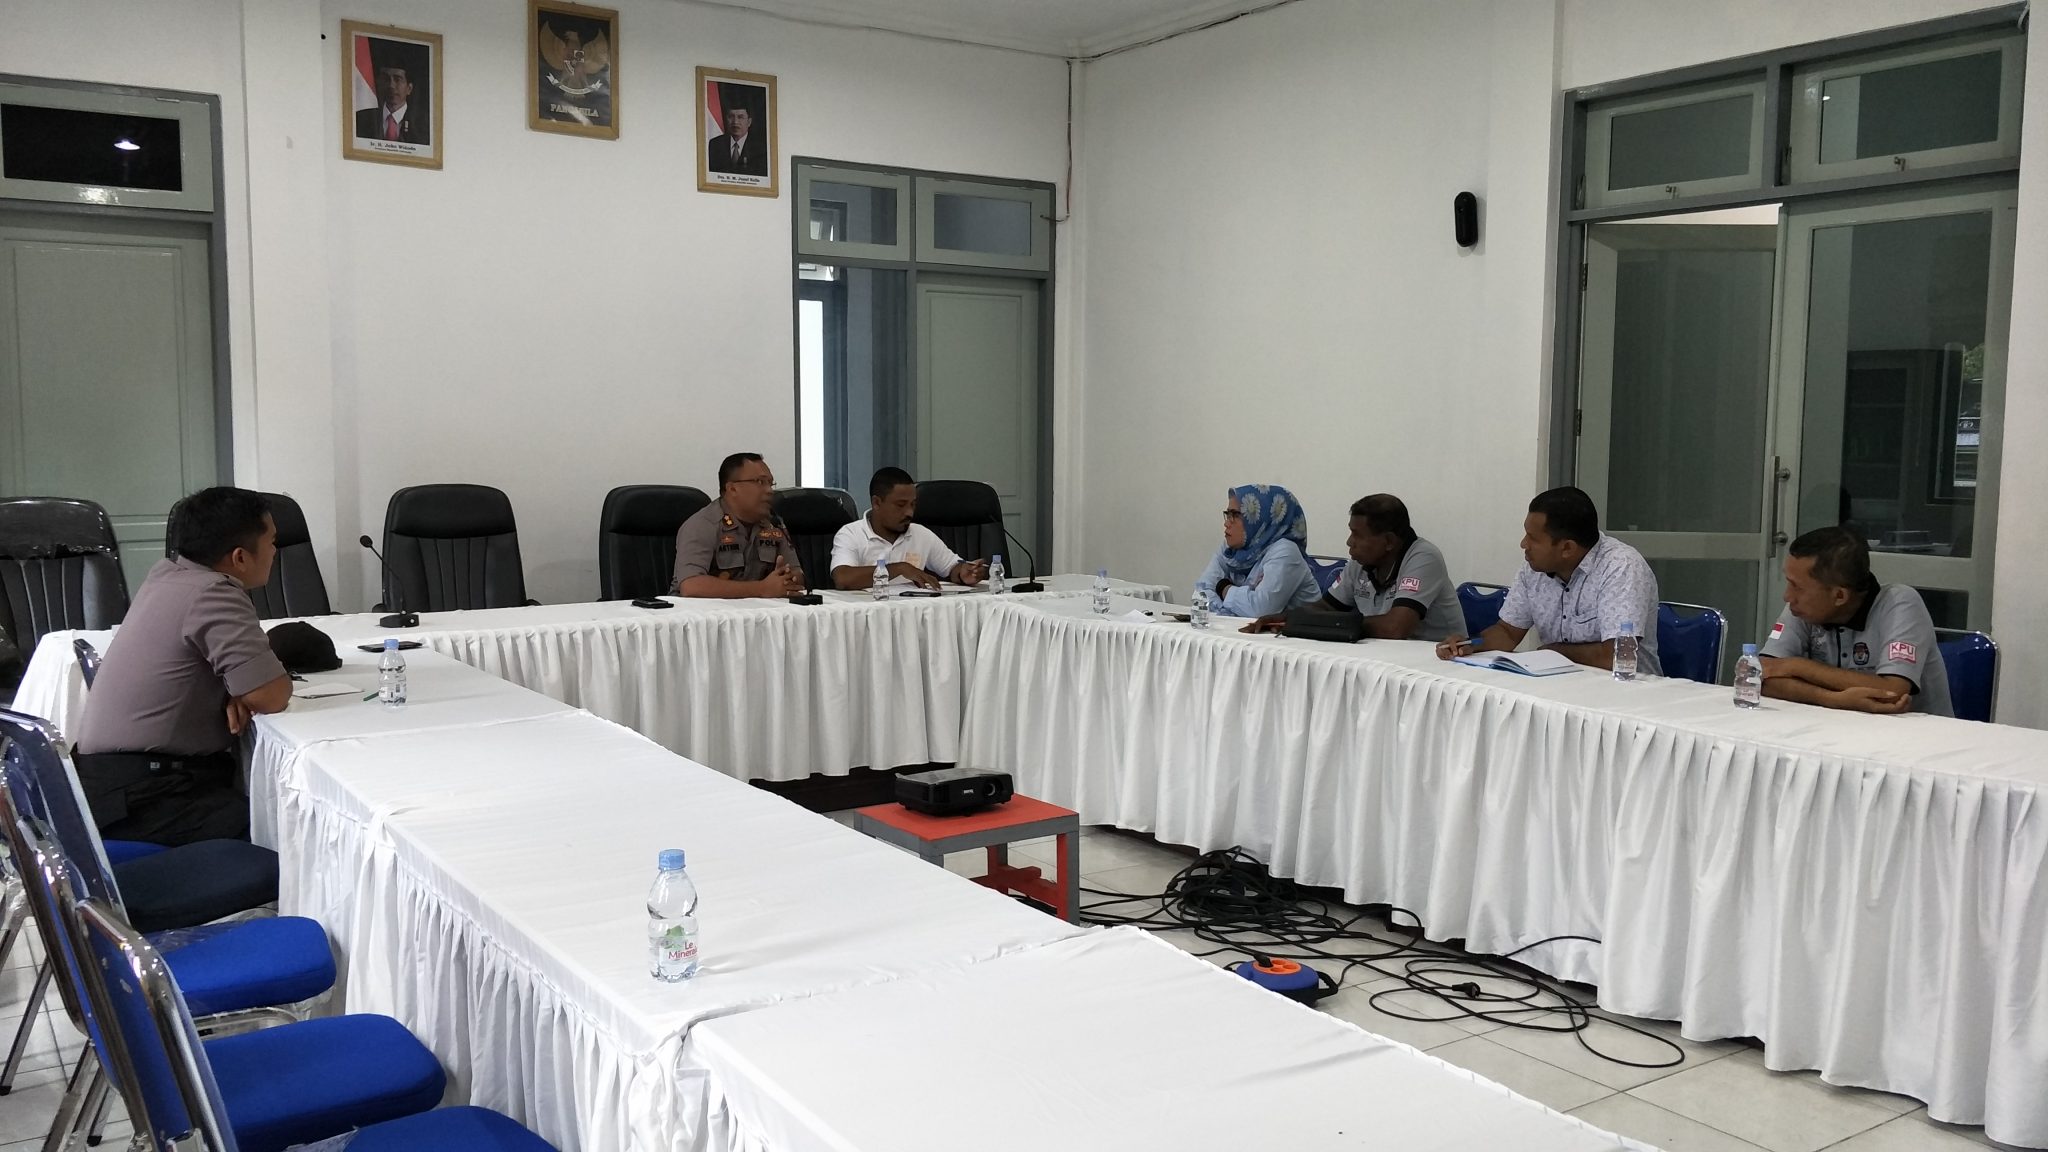 Kapolres Maluku Tengah mengecek kesiapan KPU Kabupaten Maluku Tengah menjelang Pileg dan Pilpres 2019